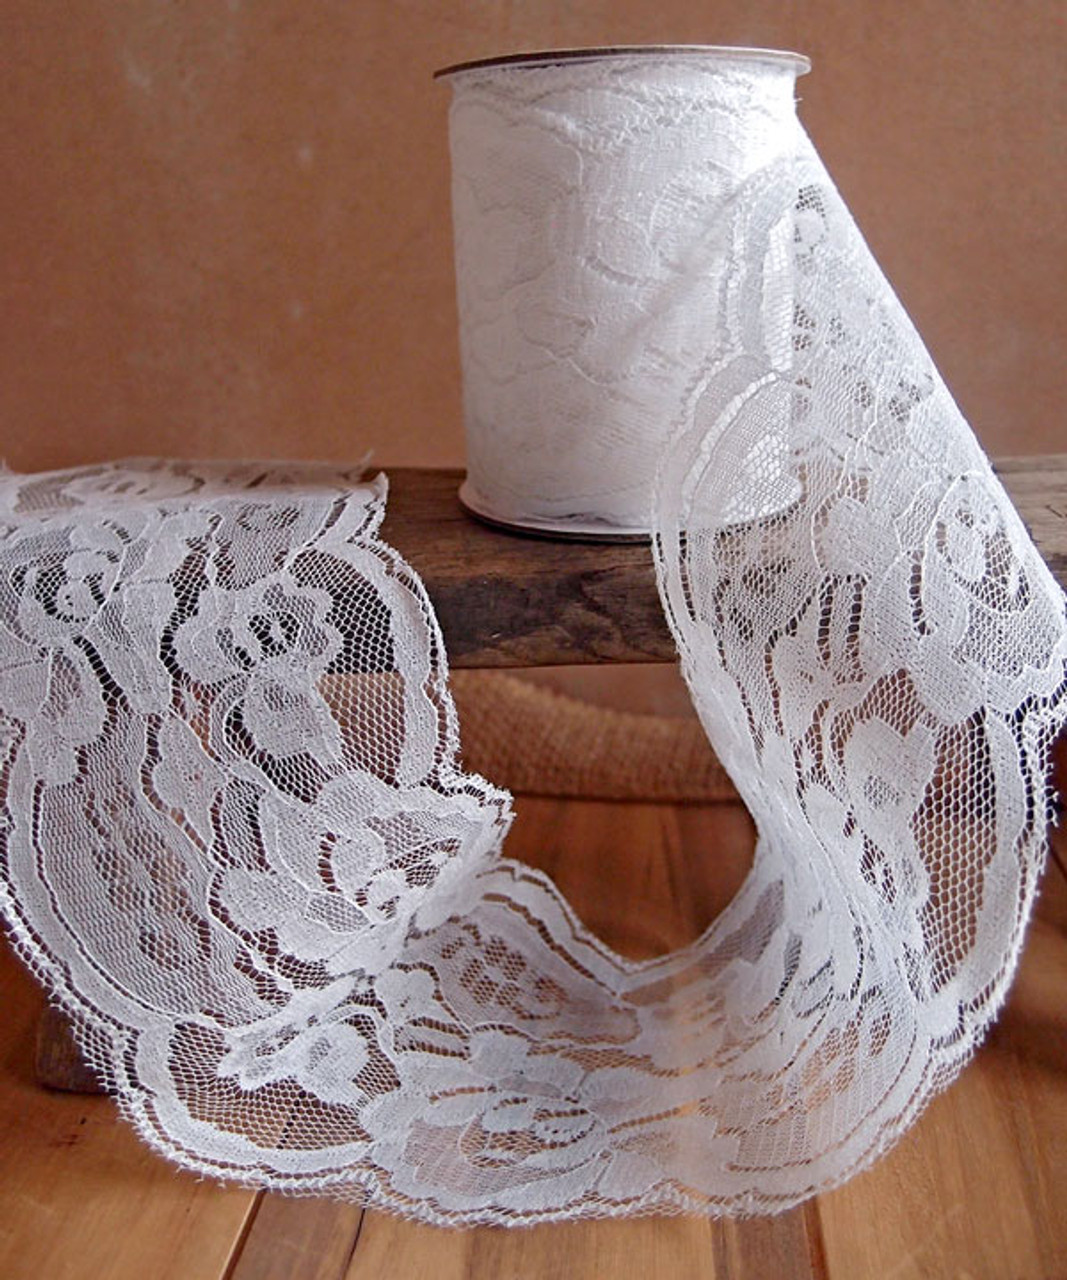 Chantilly Lace Ribbon - White (7 sizes)